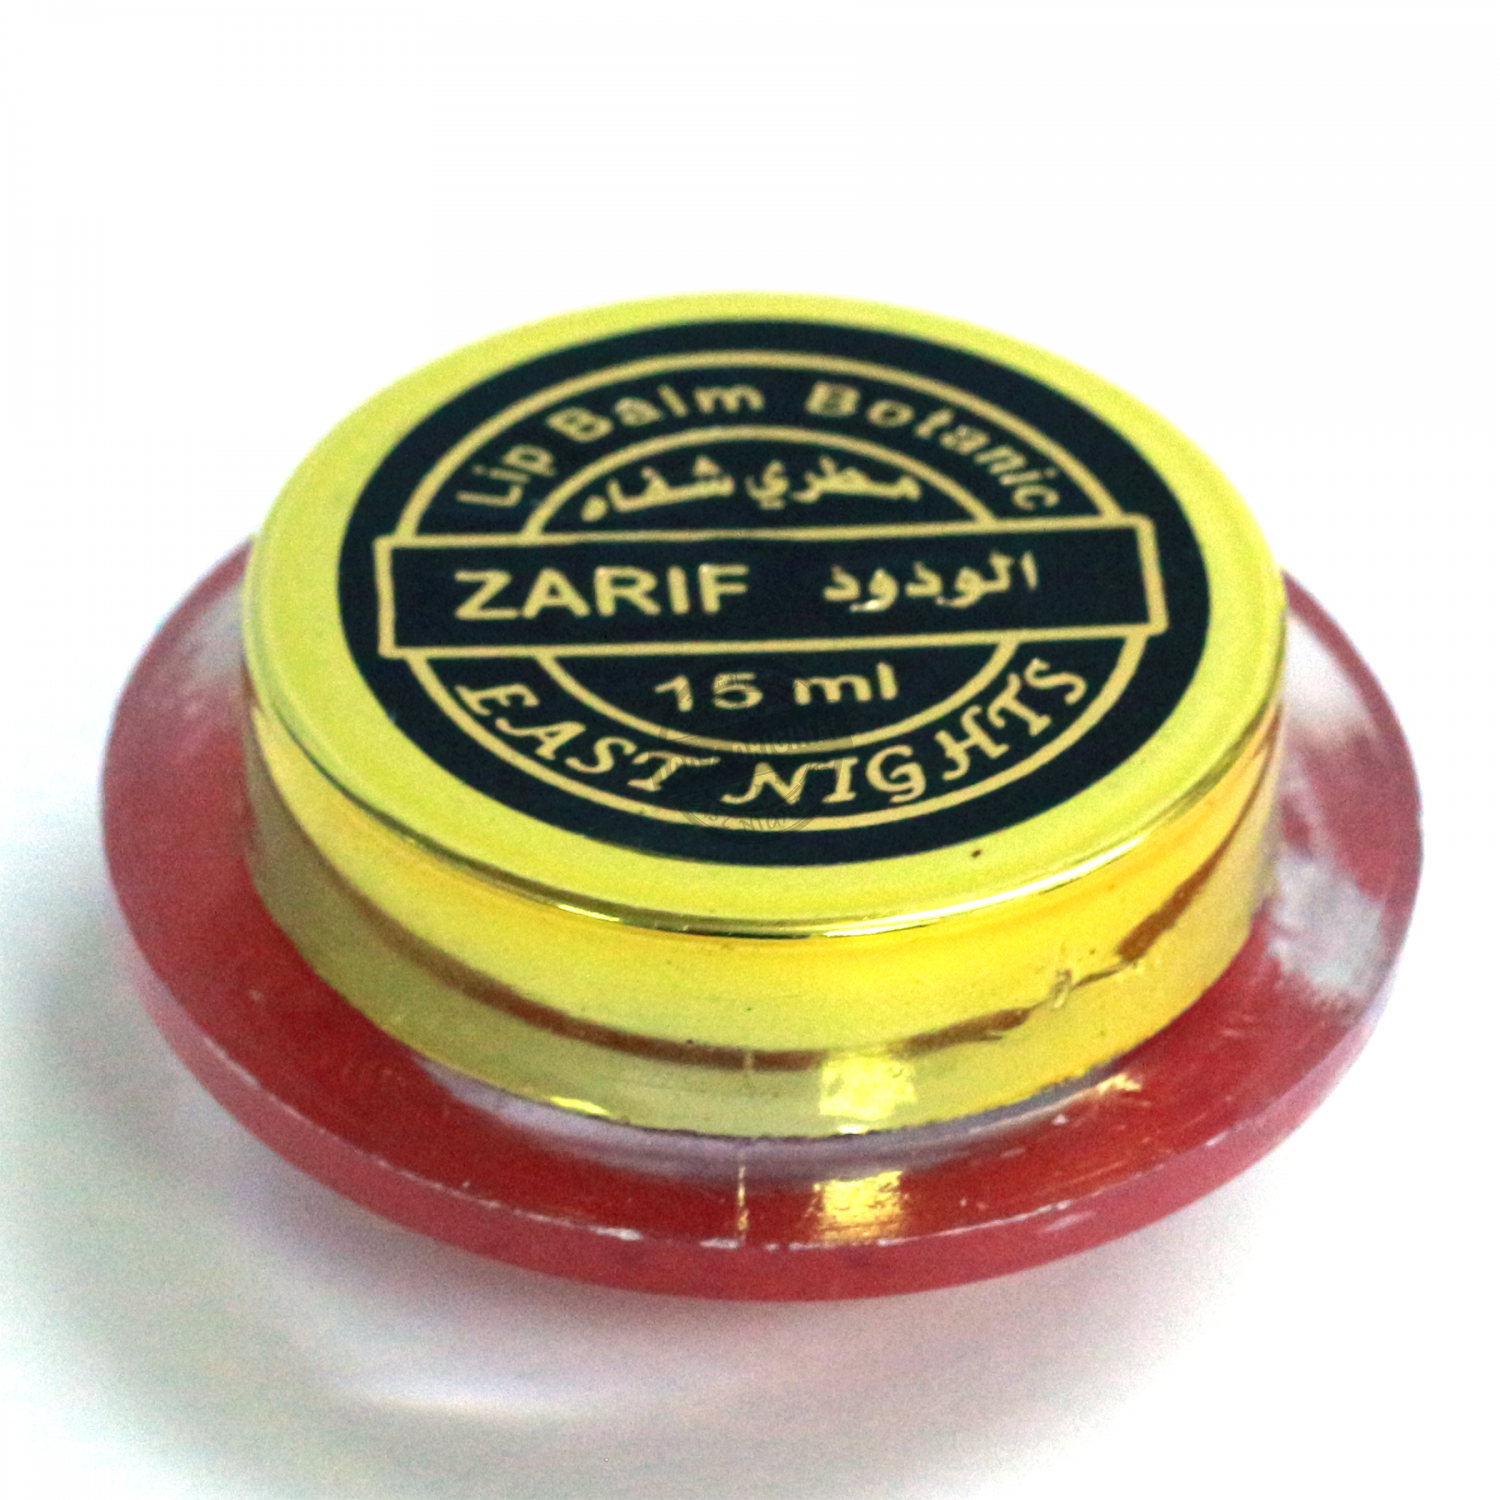 Лечебно- уходовый бальзам для губ с киви и персиковым маслом Zarif «ласковая»